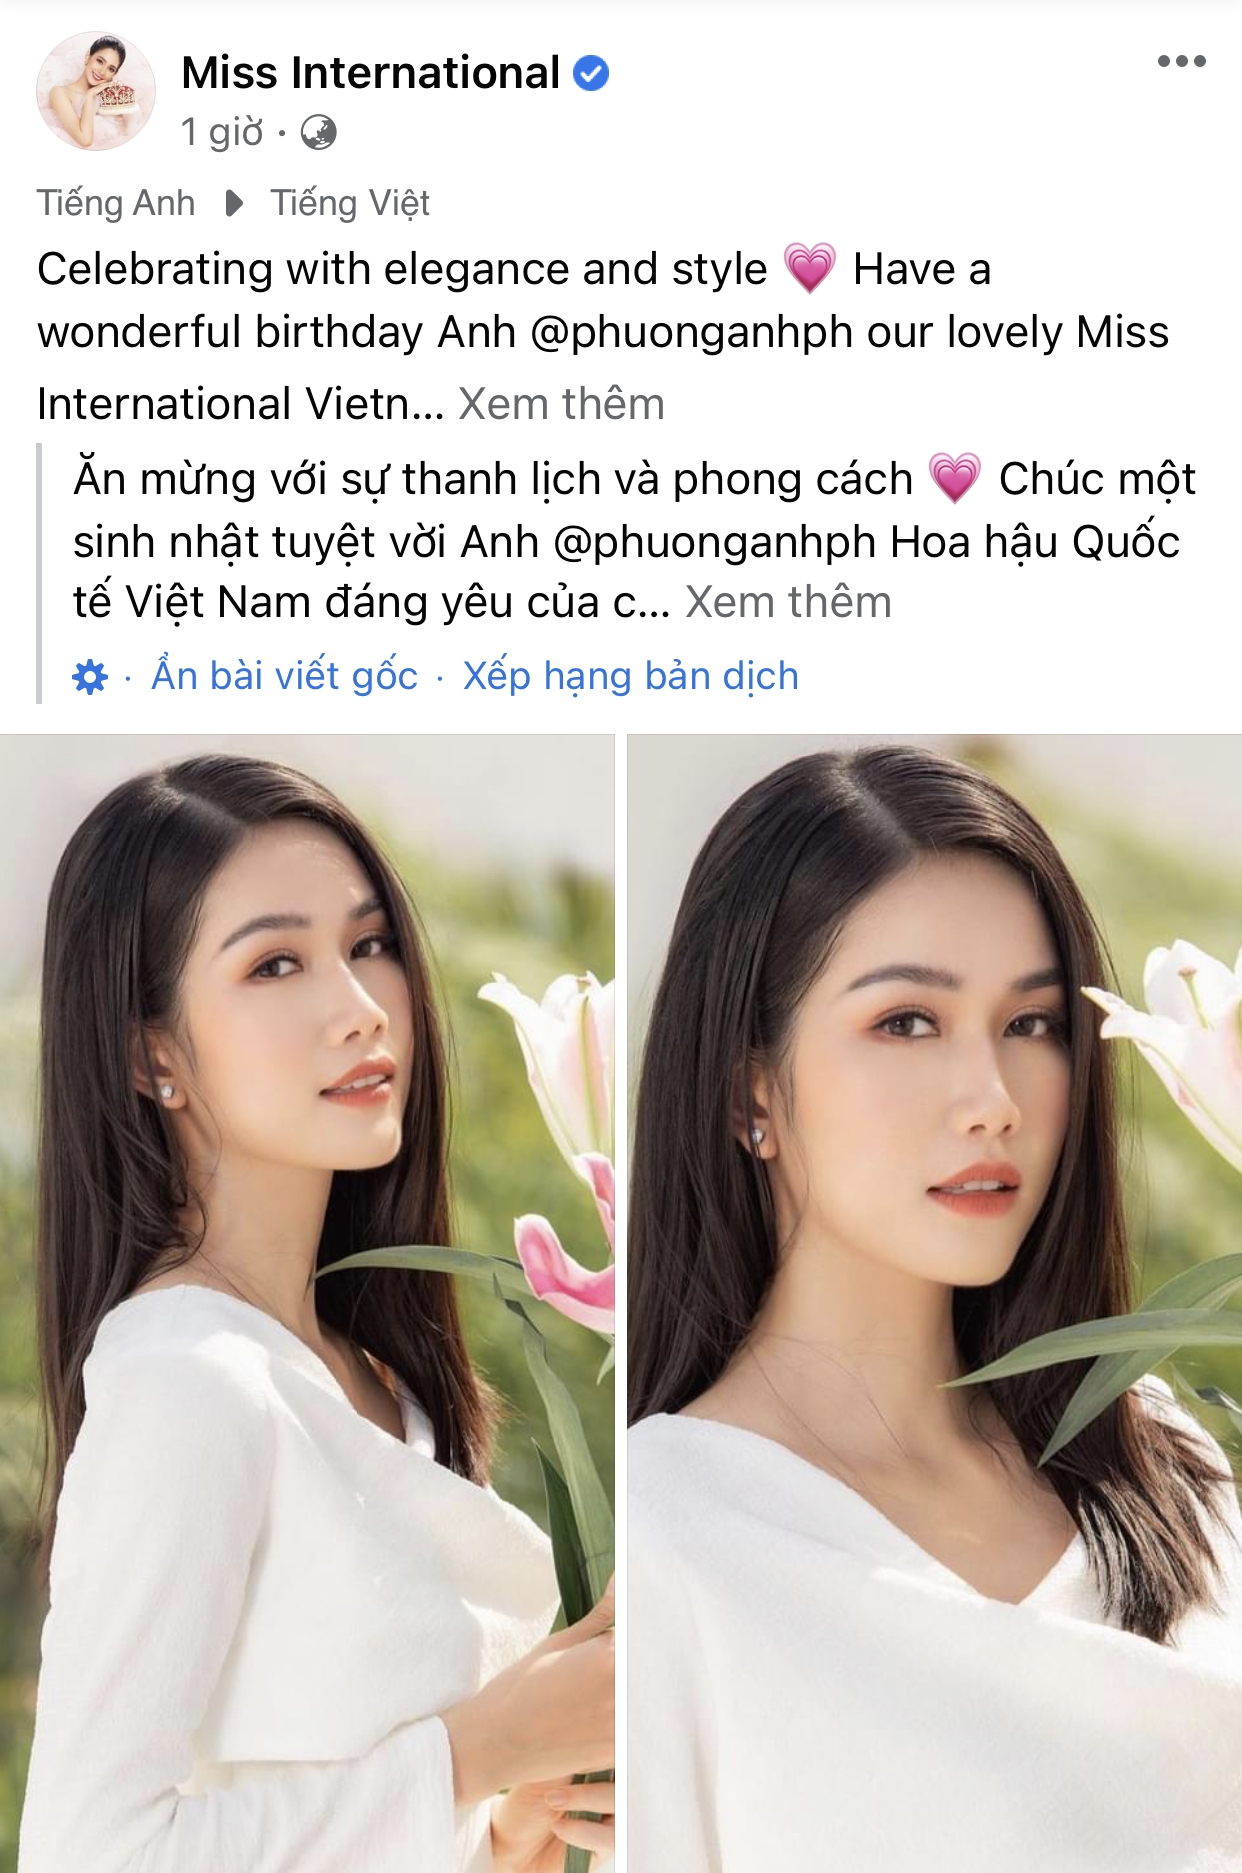 Á hậu IELTS 8.0 Phương Anh được Miss International chúc mừng sinh nhật